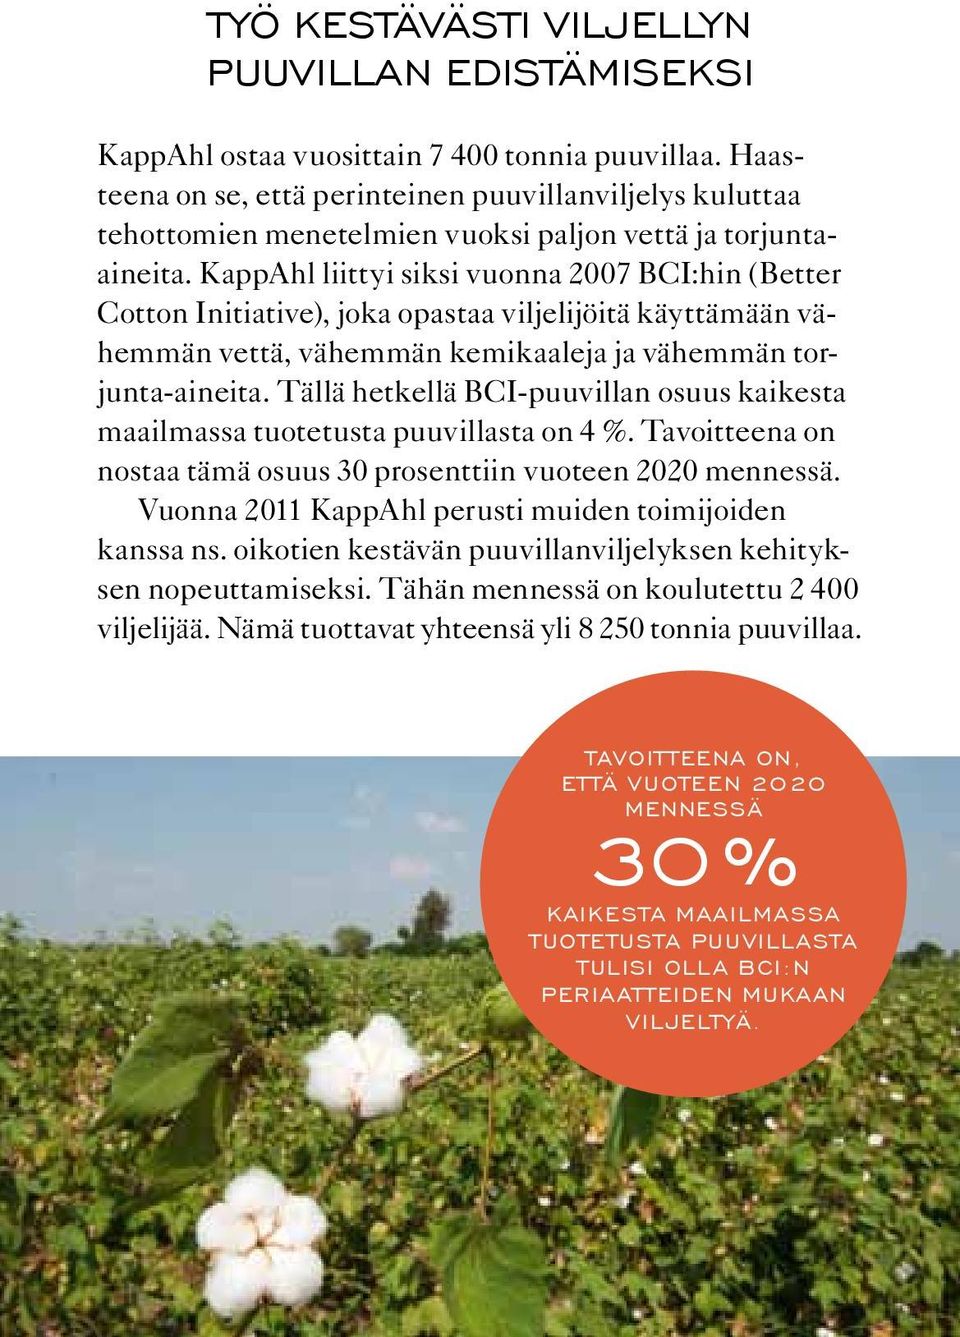 KappAhl liittyi siksi vuonna 2007 BCI:hin (Better Cotton Initiative), joka opastaa viljelijöitä käyttämään vähemmän vettä, vähemmän kemikaaleja ja vähemmän torjunta-aineita.